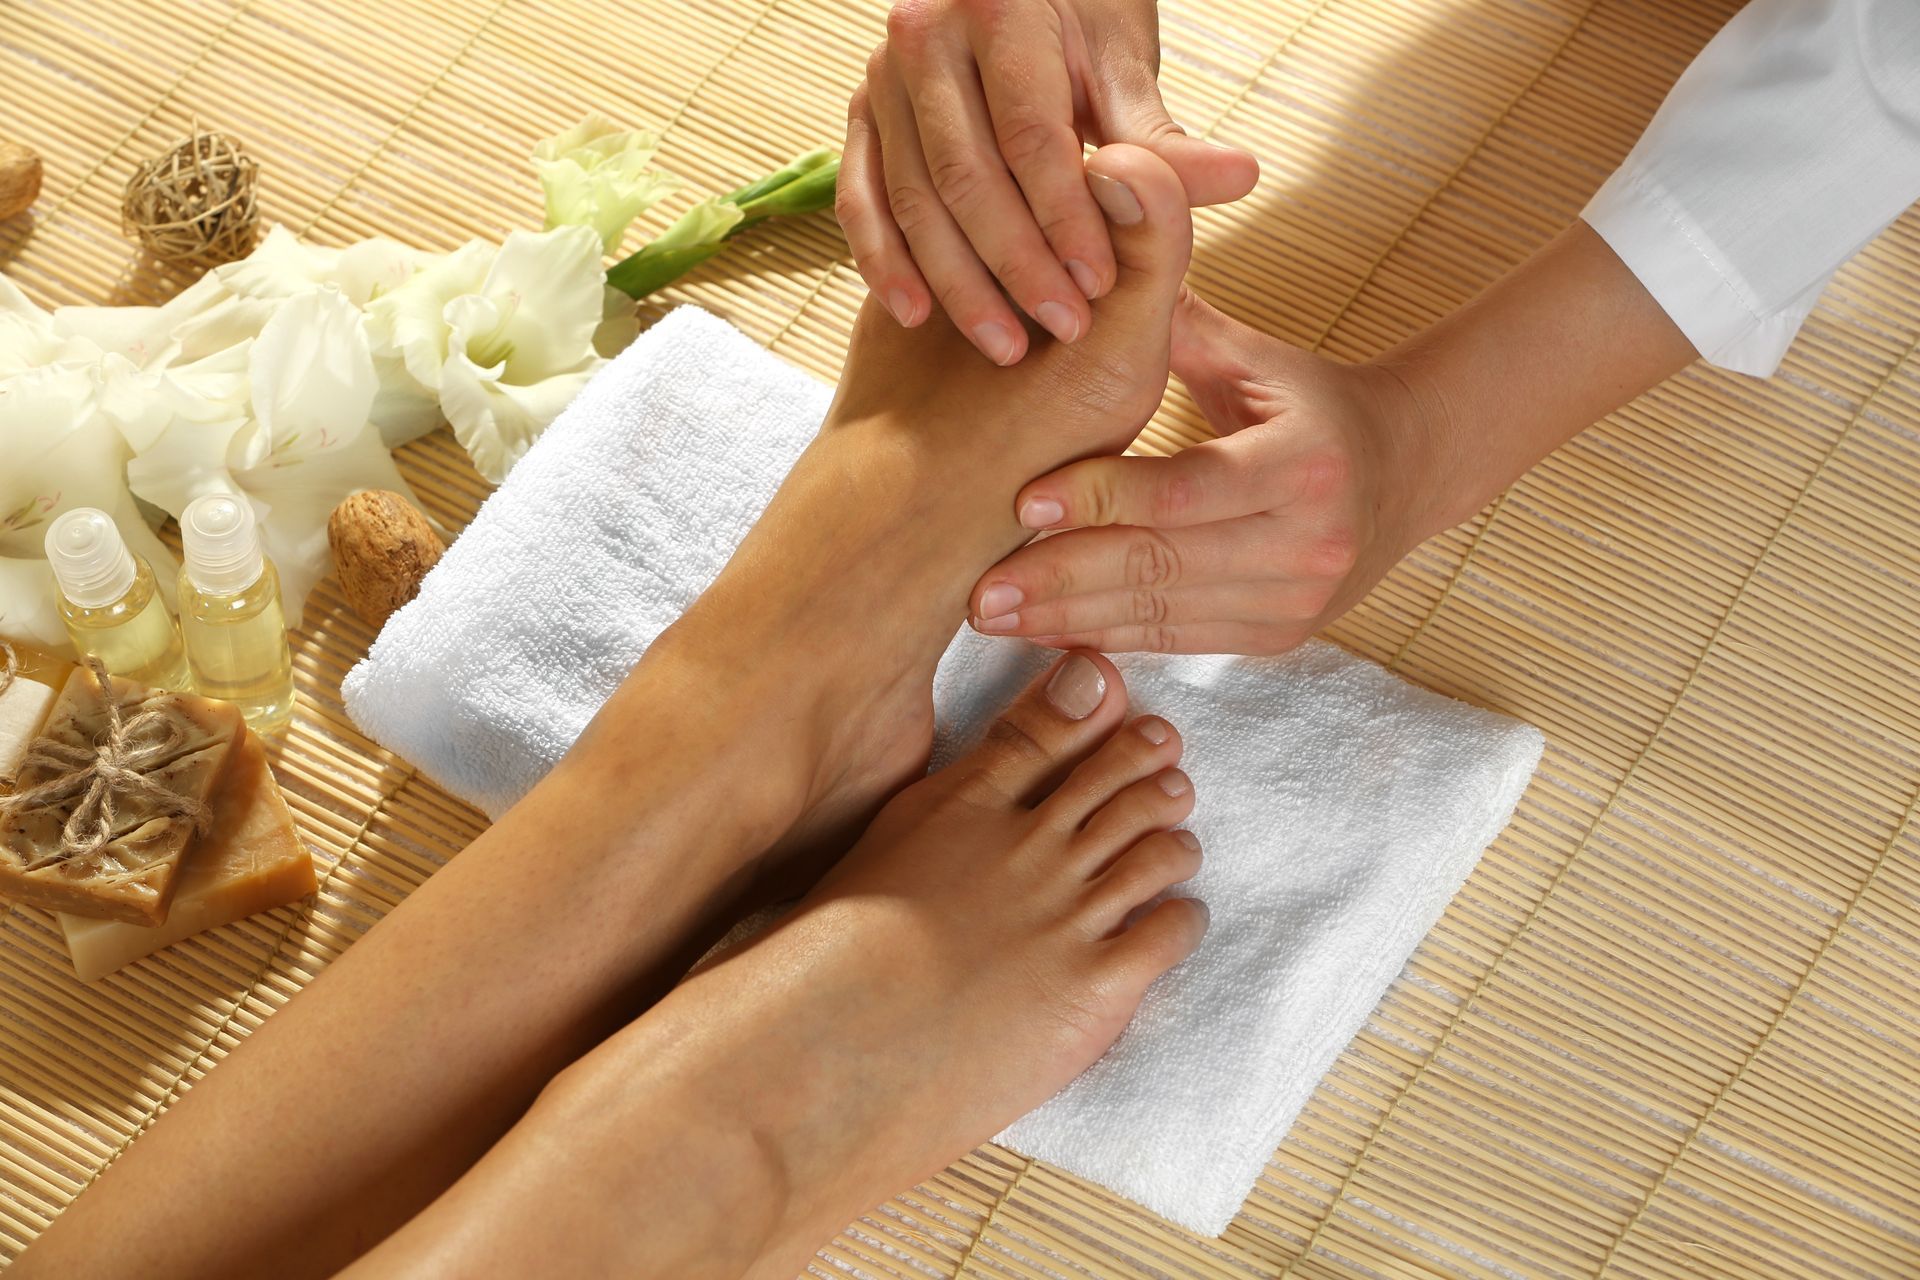 massaging woman's feet